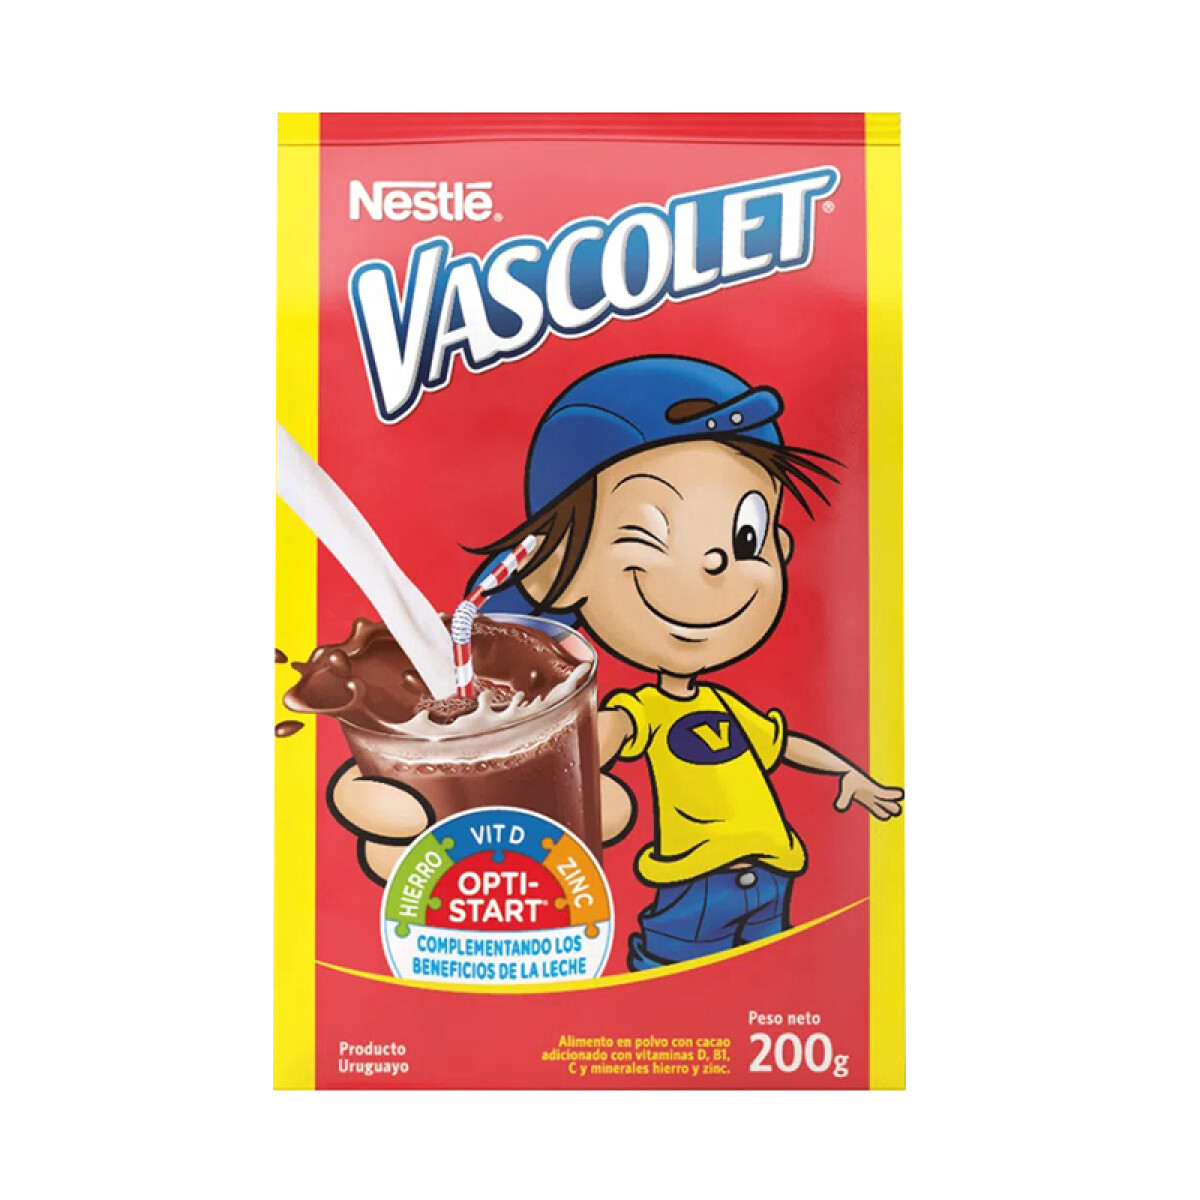 Cocoa VASCOLET 200g 